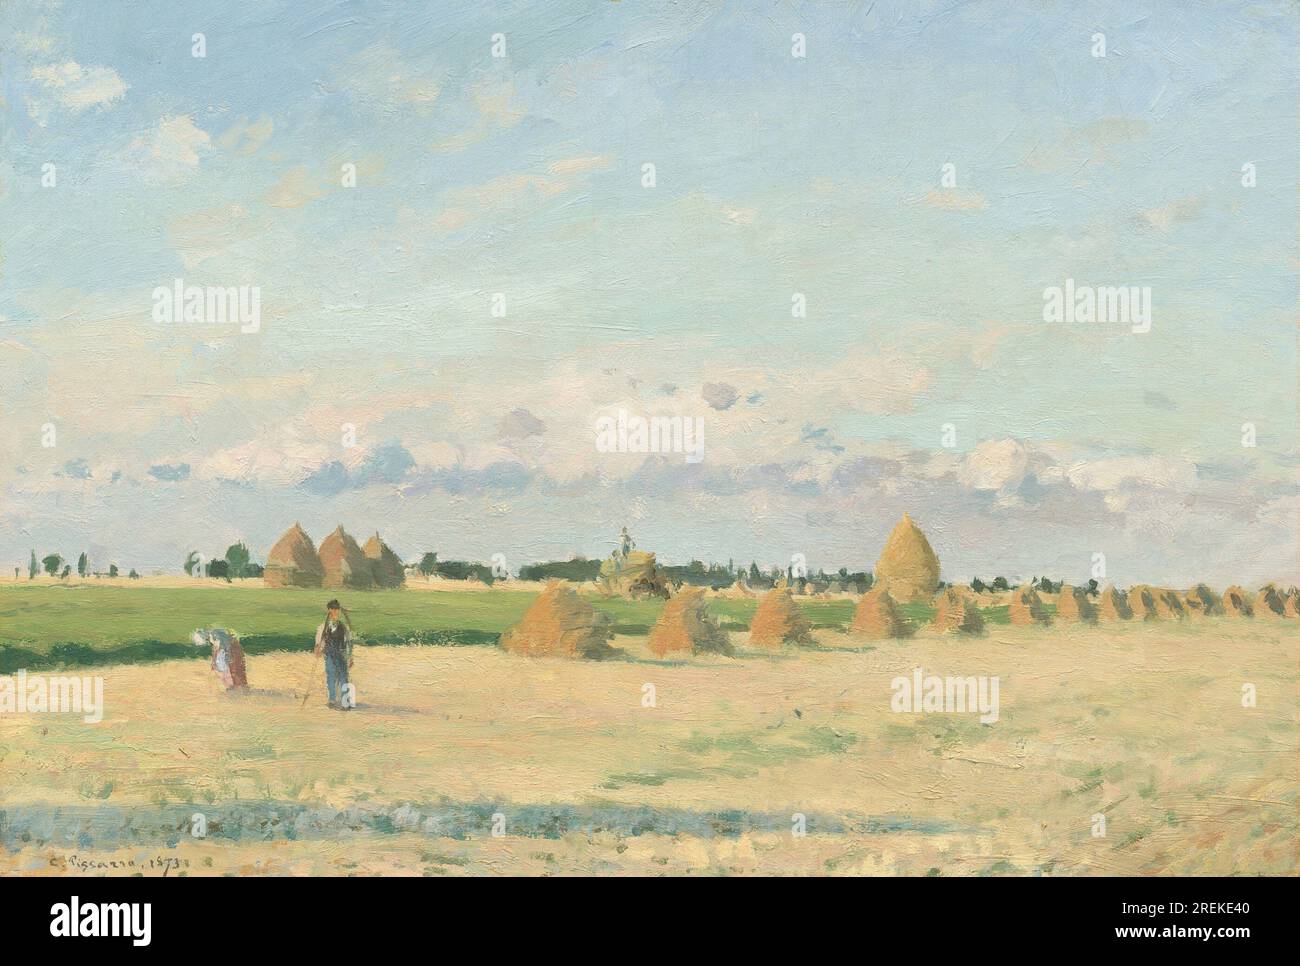 Titel: Landschaft, Ile-de-France Schöpfer: Camille Pissarro Datum: 1873 Inhalt: Ein Fluss, der durch ein ländliches Gebiet fließt, mit einem Dorf in der Ferne. Abmessungen: 36,83 x 53,34 cm (14 1/2 x 21 Zoll) Medium: Öl auf Leinwand Ort: National Gallery of Art, Washington, D.C. Stockfoto